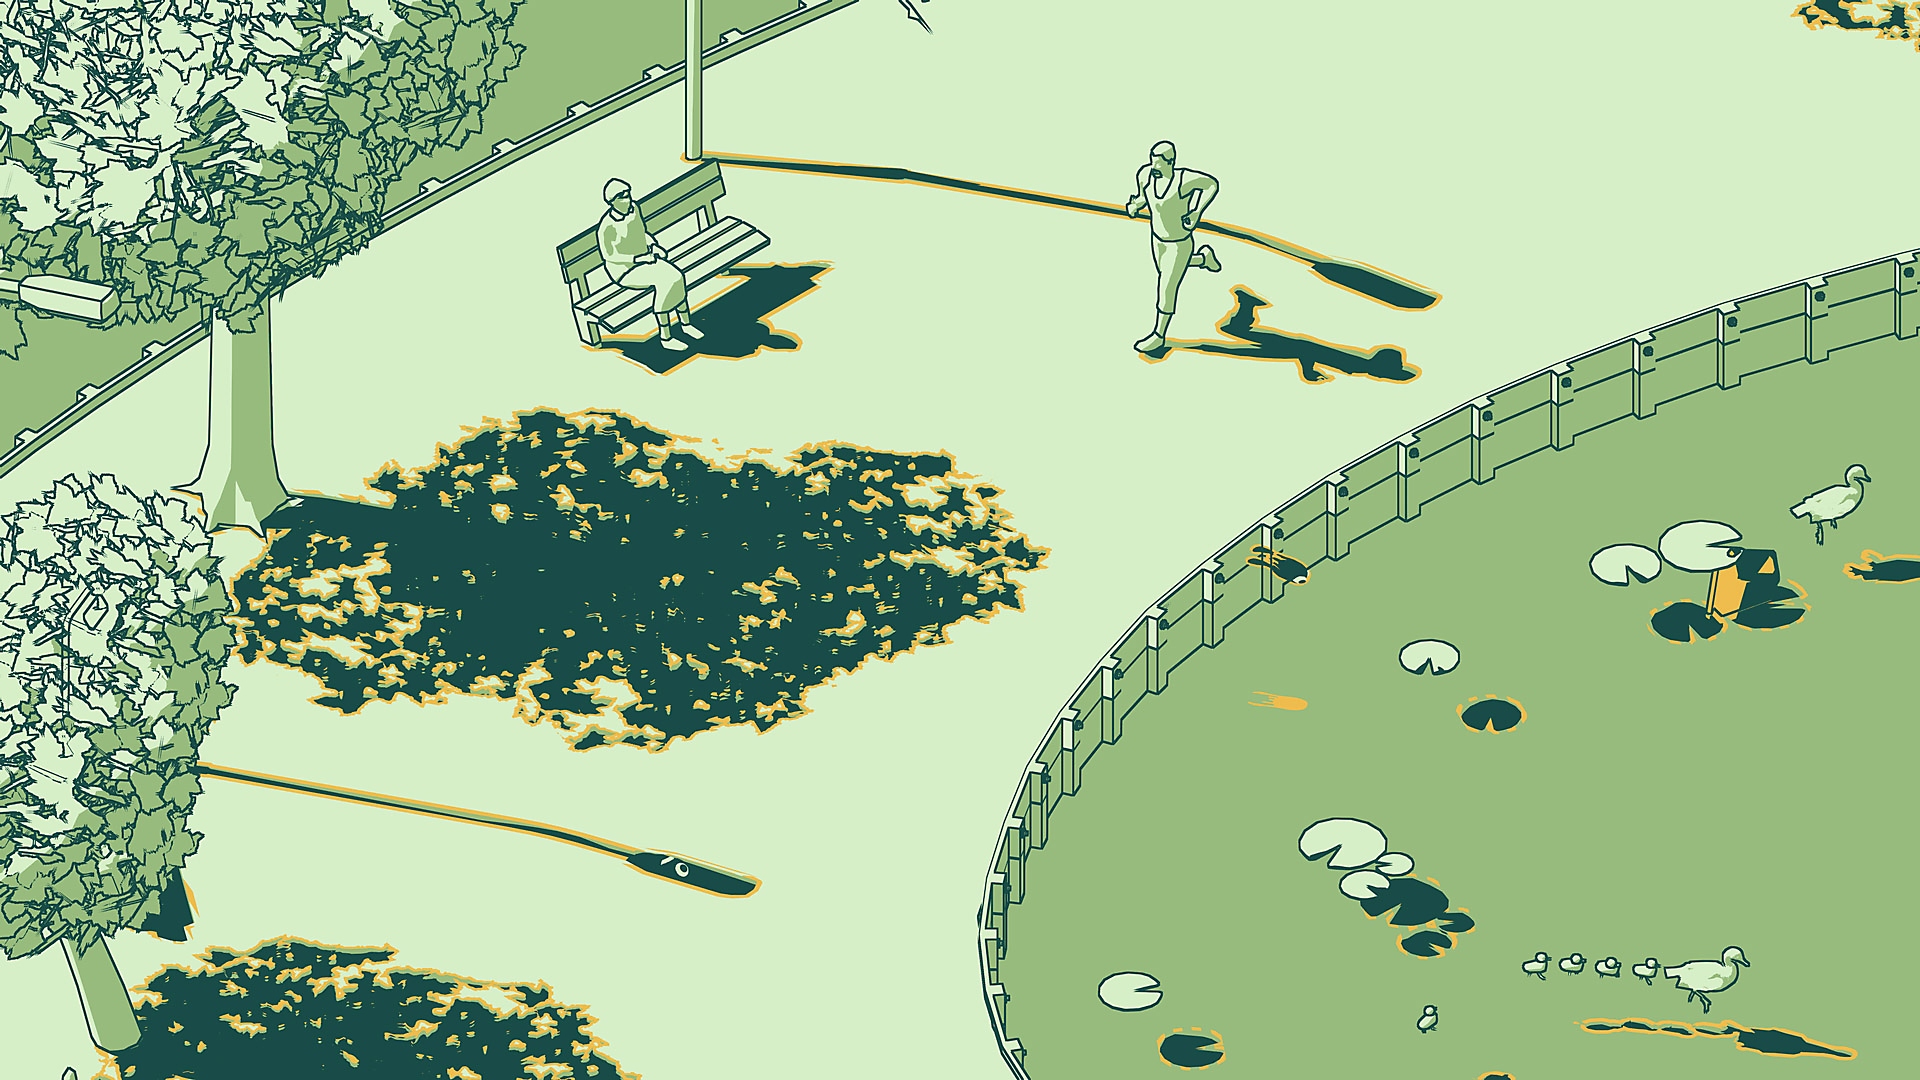 SCHiM - captura de tela mostrando cena de um parque com um corredor e alguém sentado em um banco